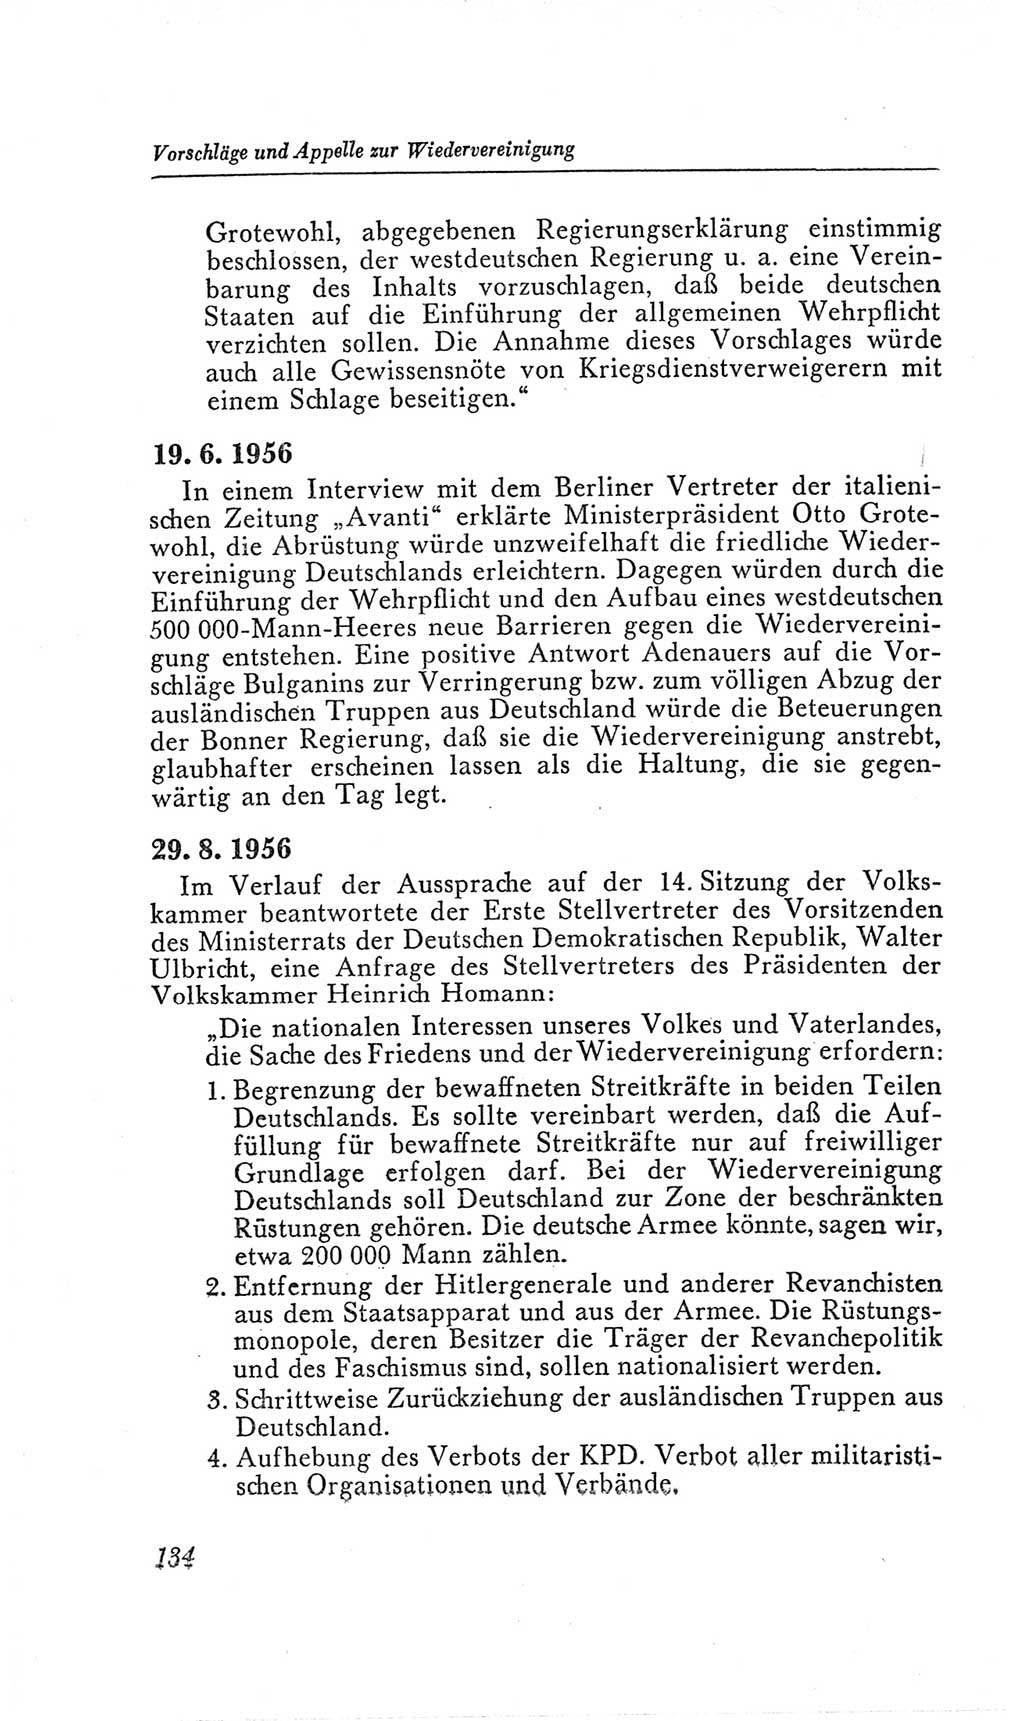 Handbuch der Volkskammer (VK) der Deutschen Demokratischen Republik (DDR), 2. Wahlperiode 1954-1958, Seite 134 (Hdb. VK. DDR, 2. WP. 1954-1958, S. 134)